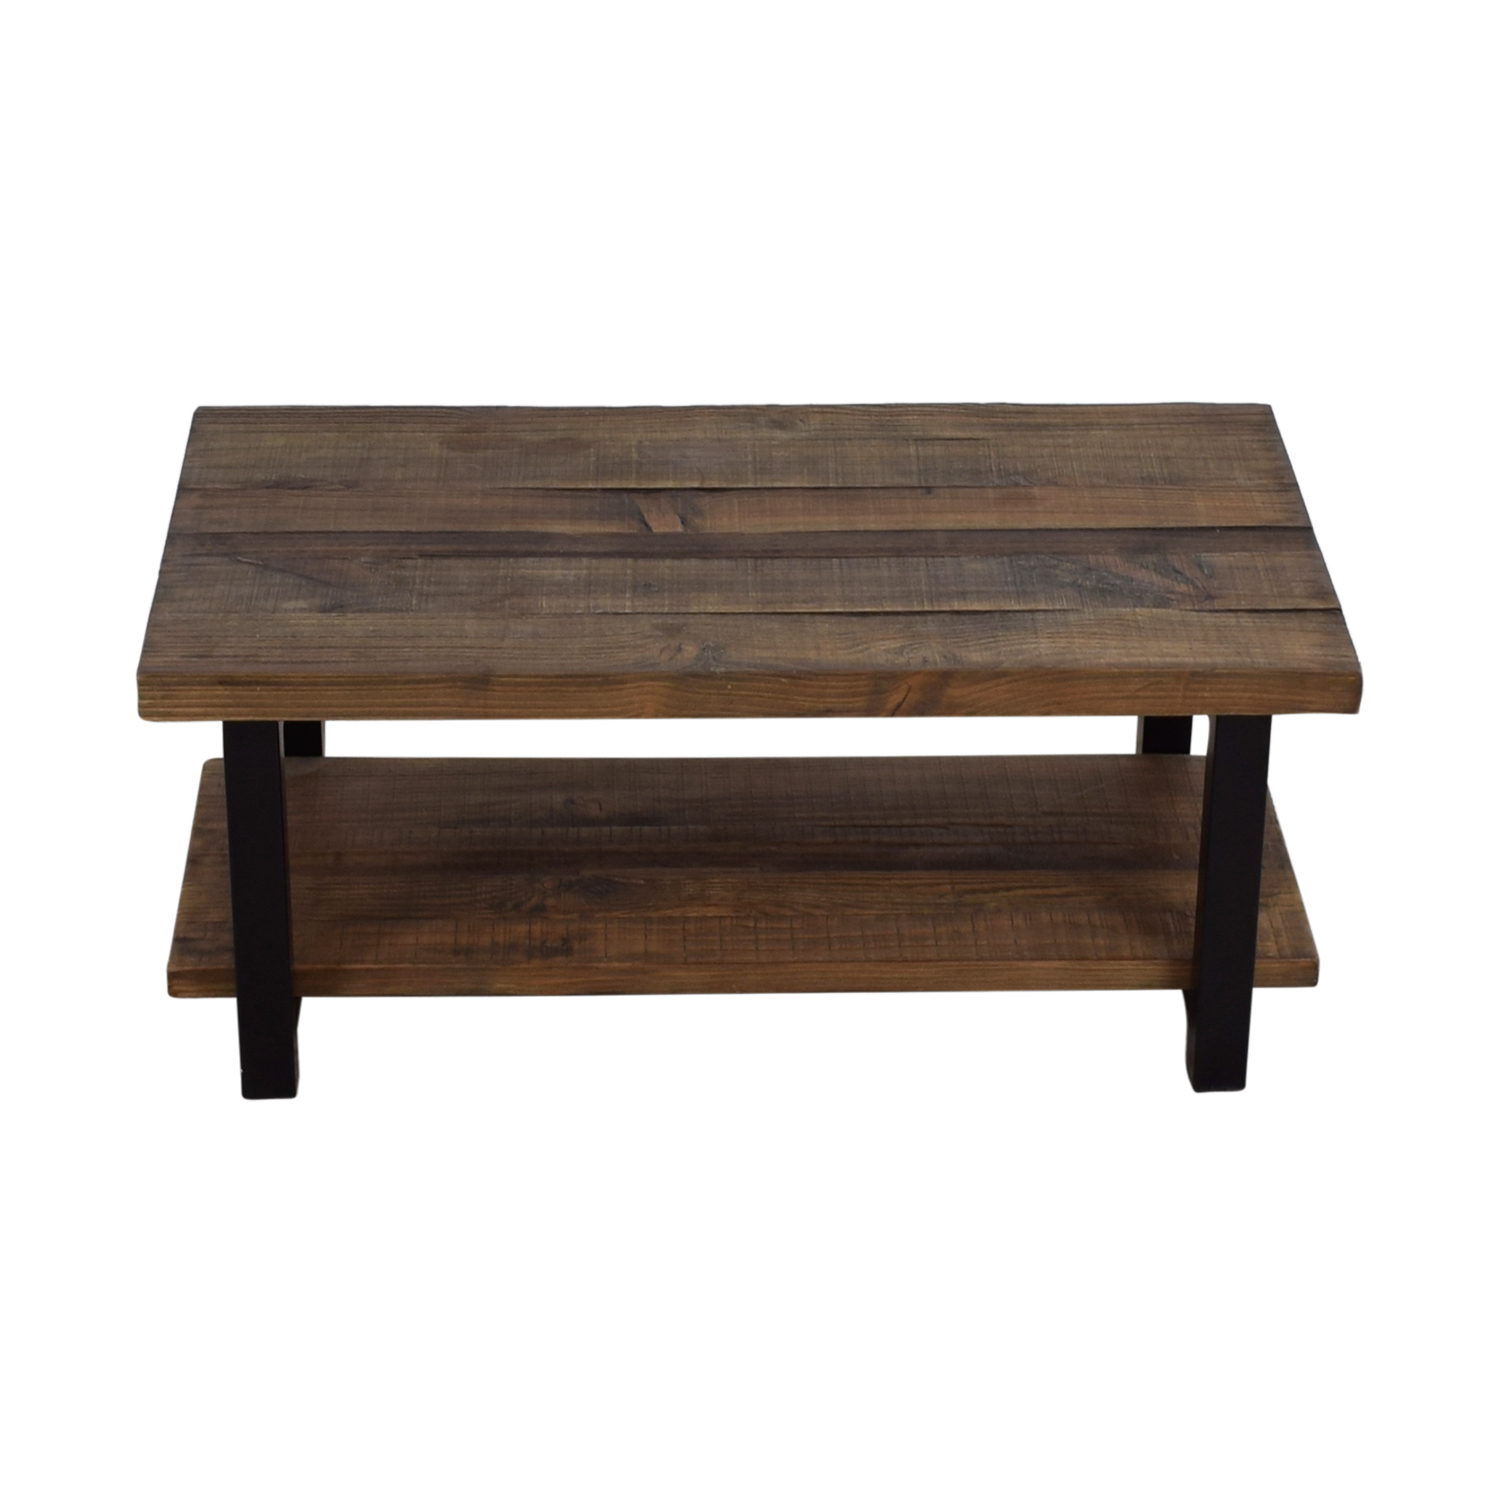 72 Off Loon Peak Loon Peak Somers Wood And Metal Coffee Table in sizing 1500 X 1500